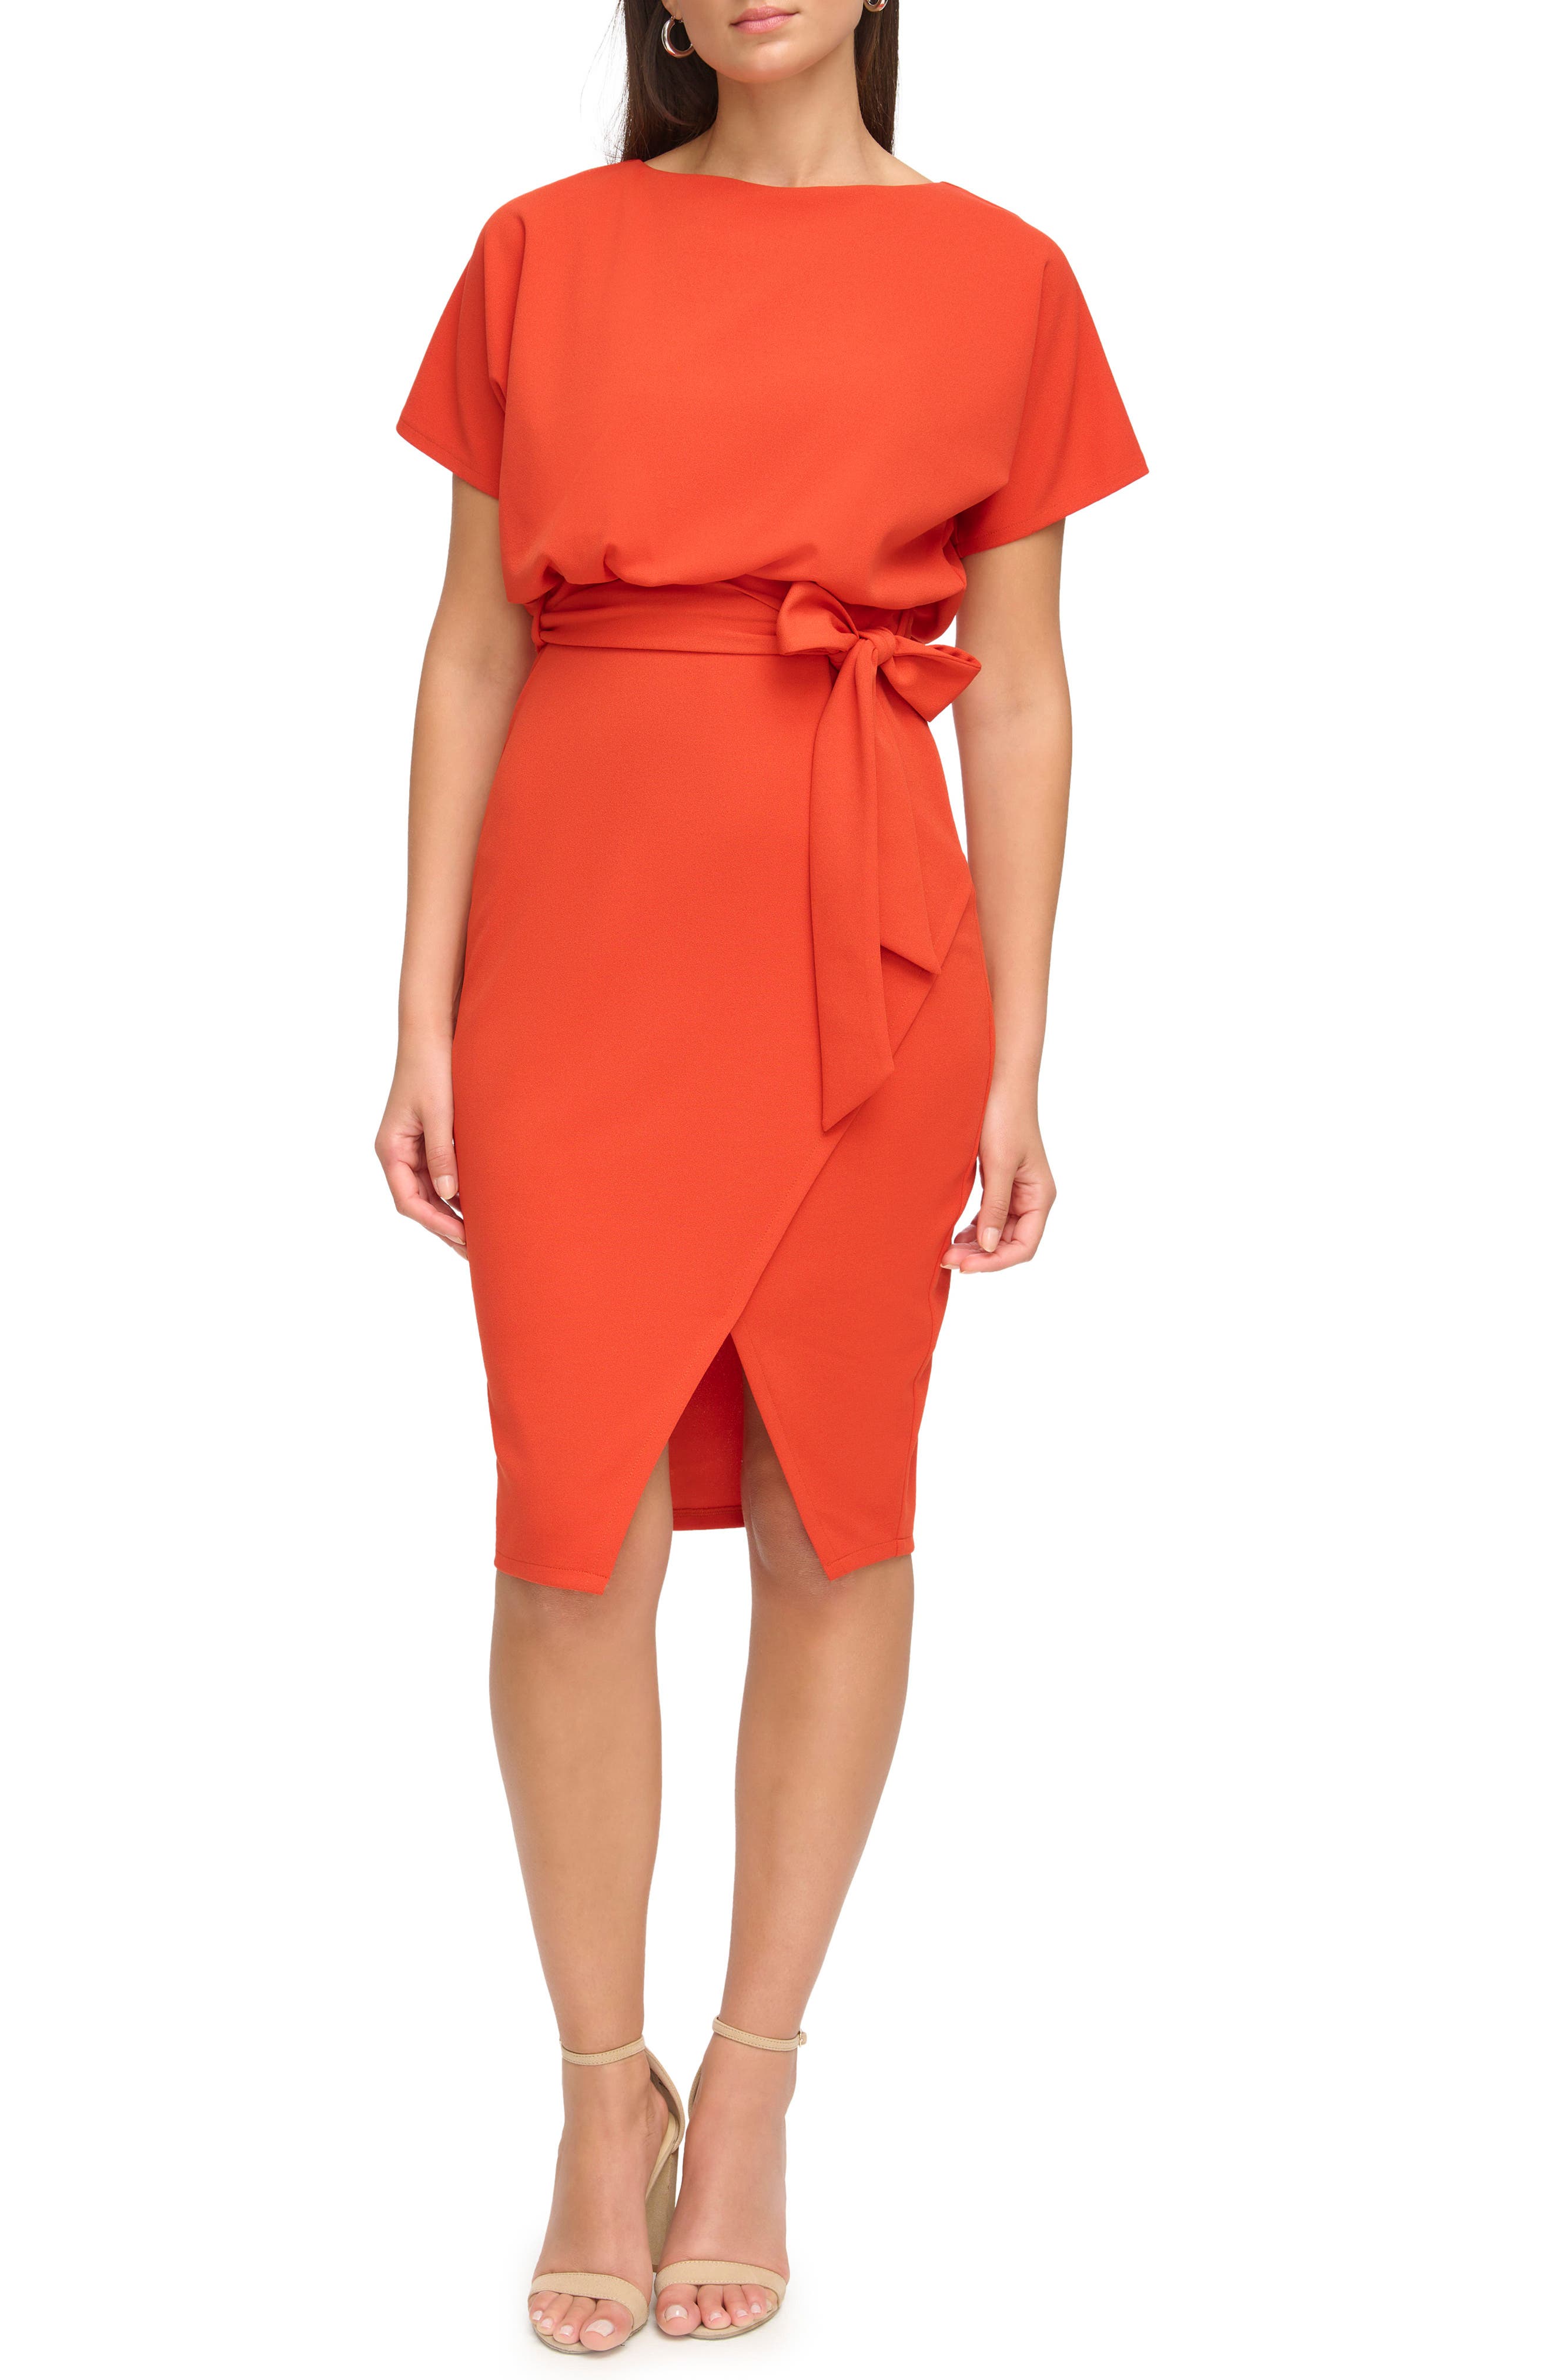 orange dresses for women